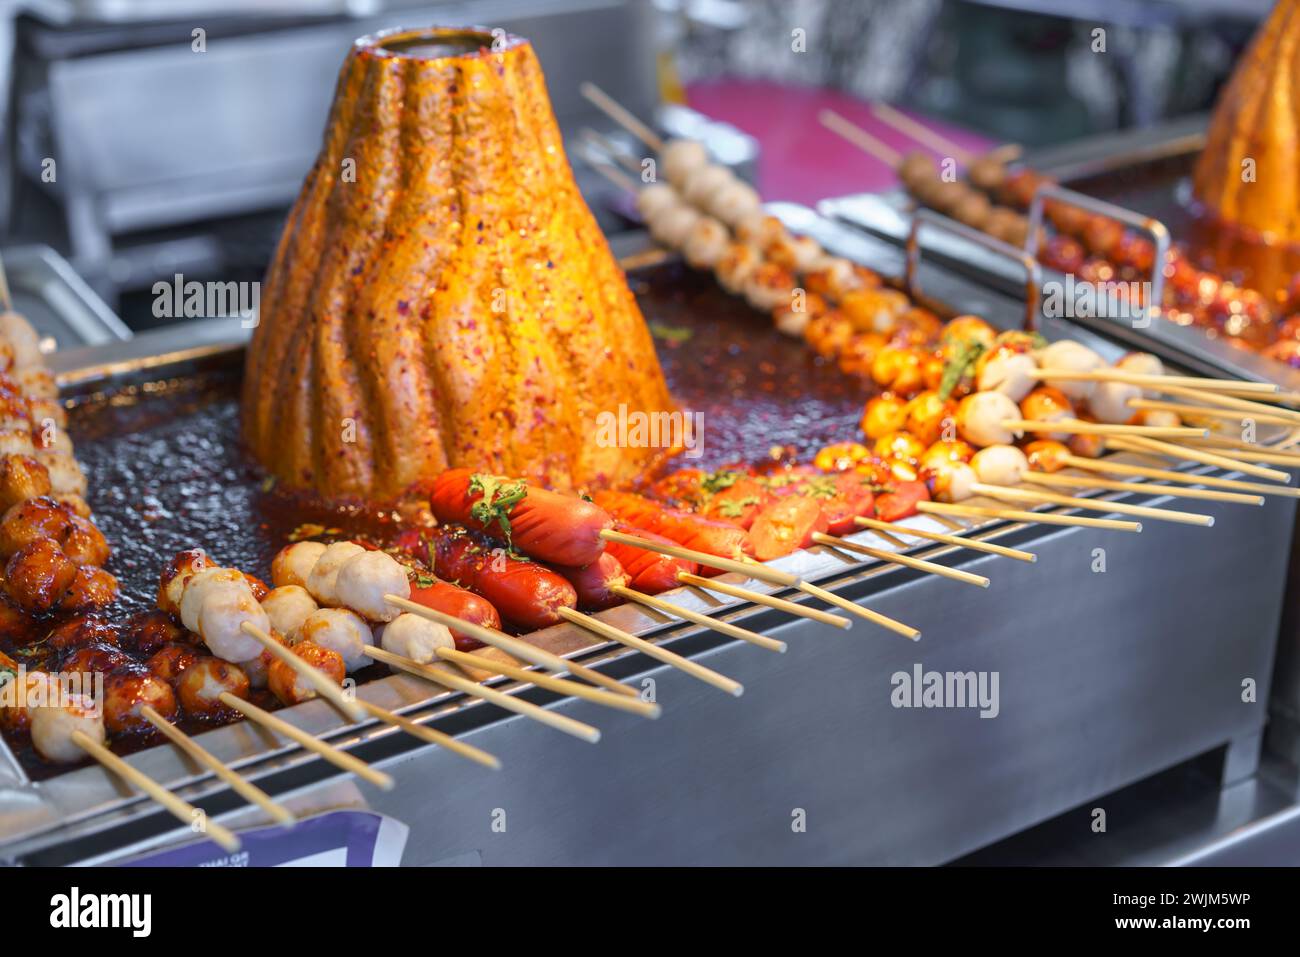 Palla di maiale spiedata, con salsiccia cucinata su una griglia calda, bastonata con una salsa piccante, in un mercato di Street food. Foto Stock